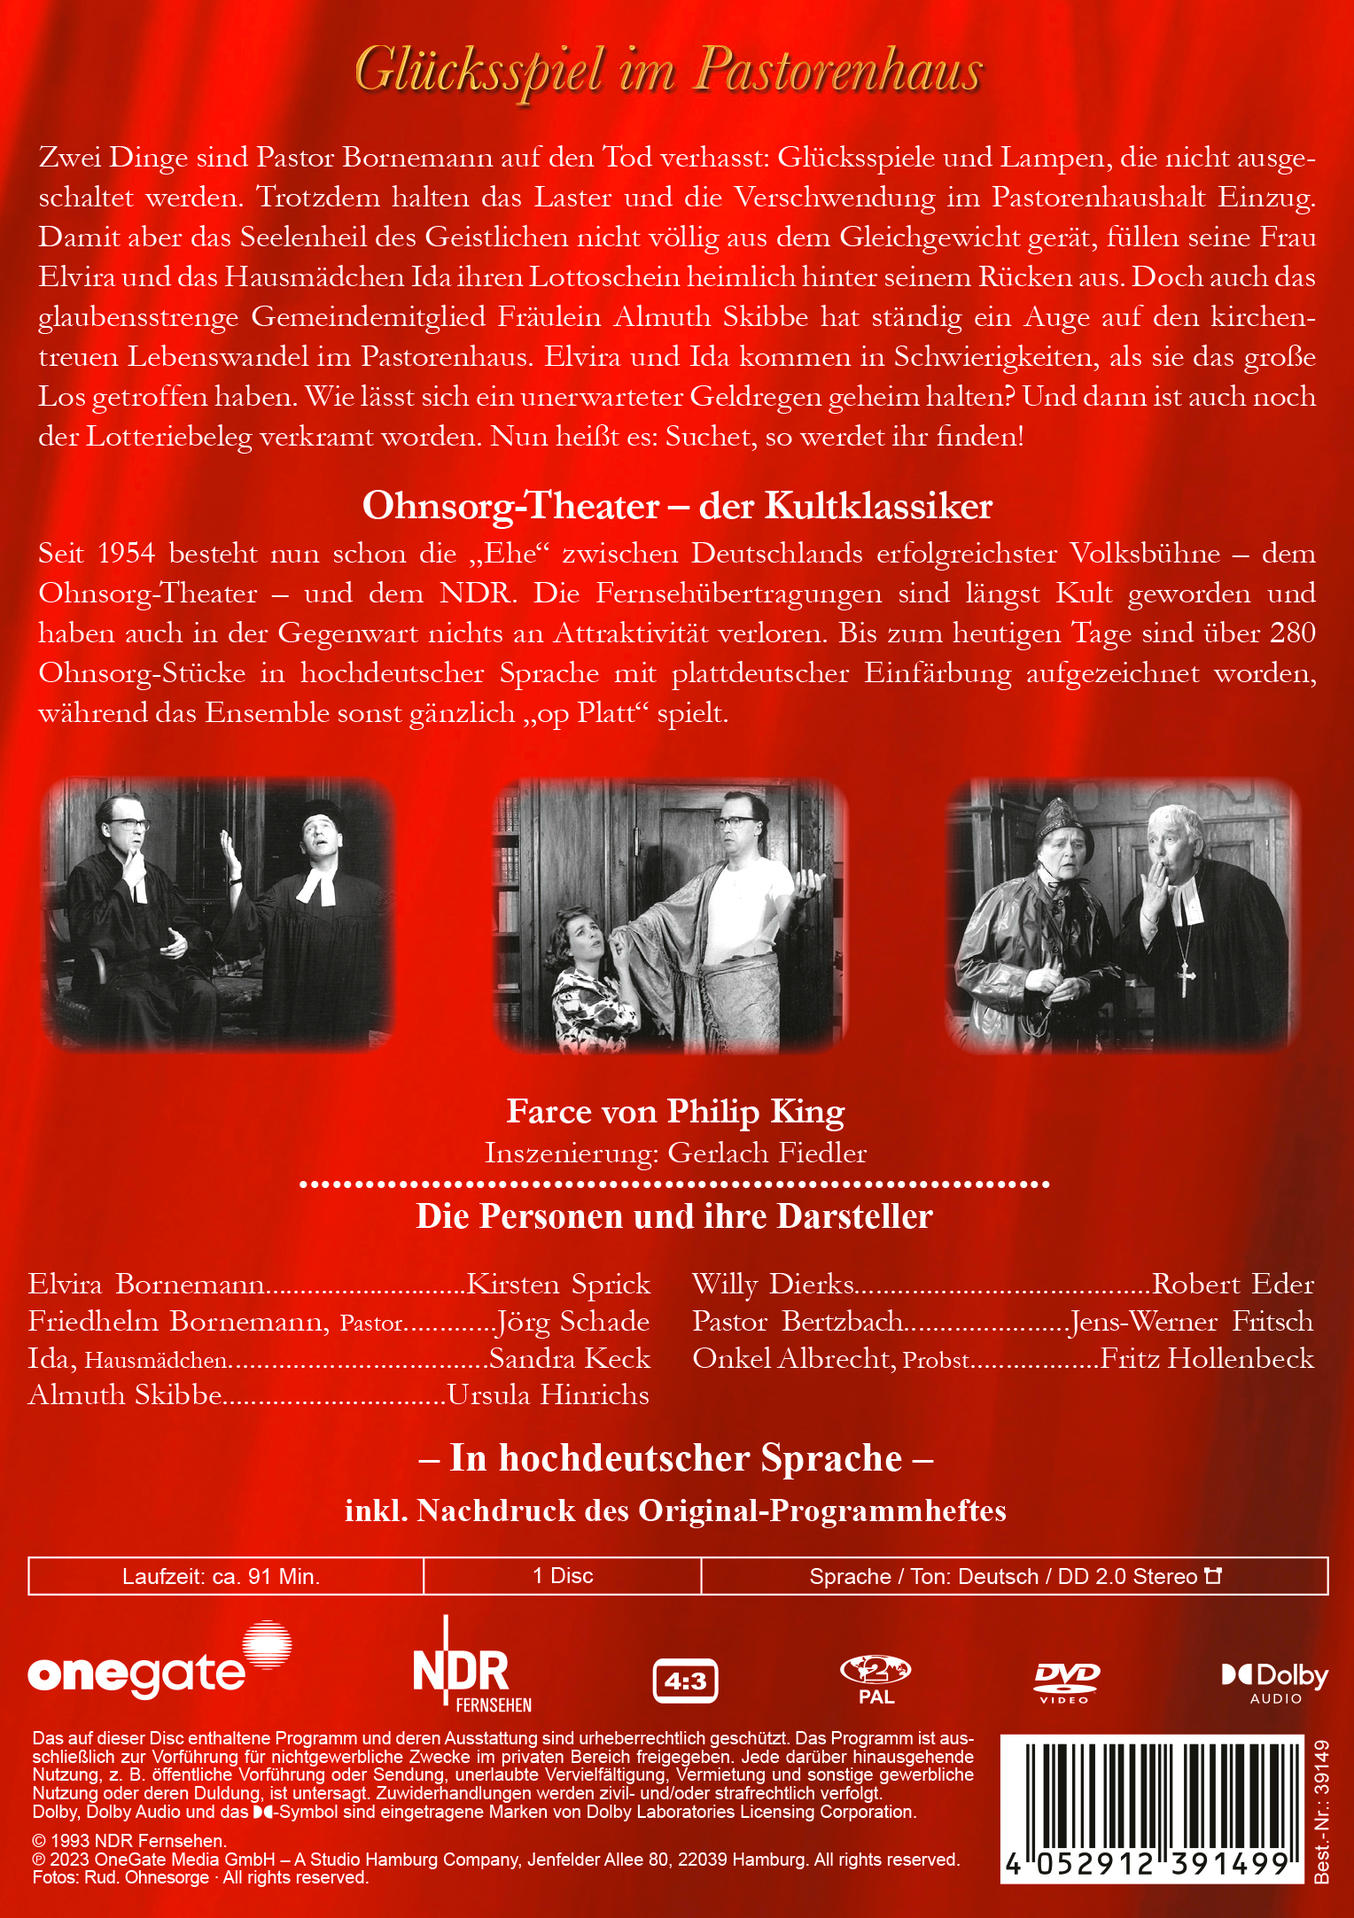 Ohnsorg-Theater Klassiker: Glücksspiel im Pastorenhaus DVD